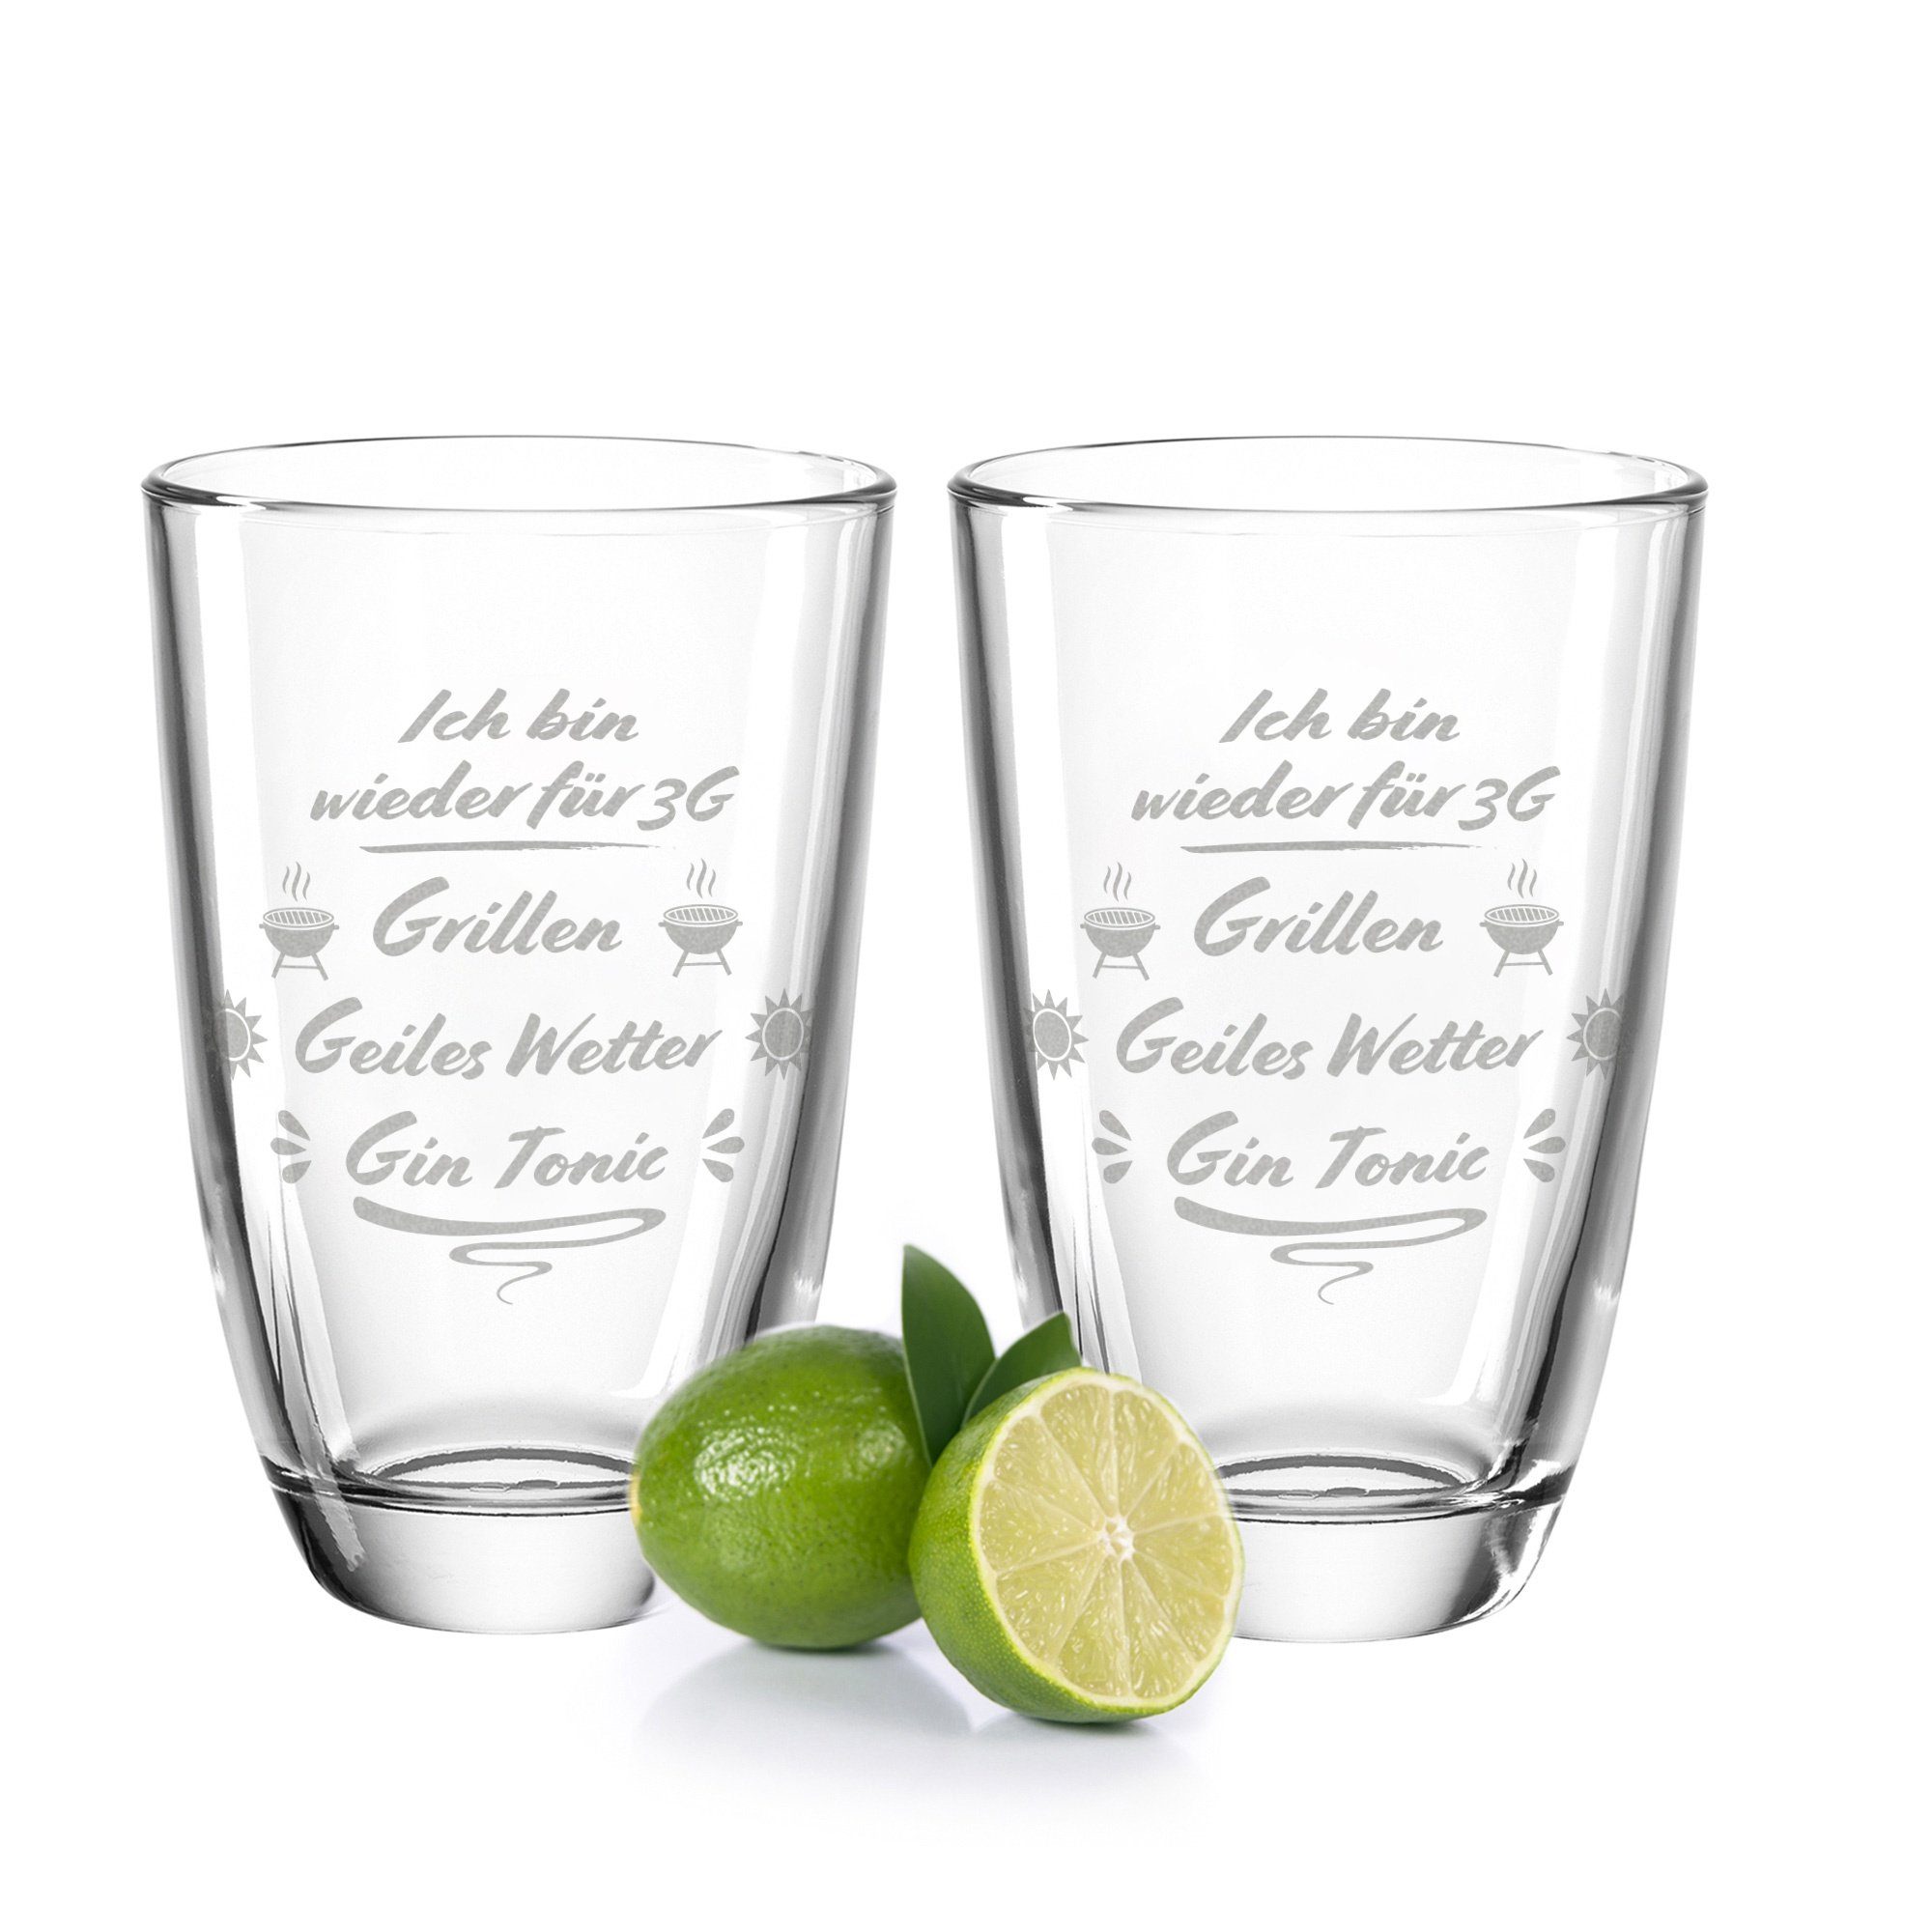 GRAVURZEILE Cocktailglas Montana GIN-Gläser 2er Set - 3G Grillen, Geiles  Wetter, Gin Tonic, Glas, Lustiges Party Geschenkset für Gin Liebhaber